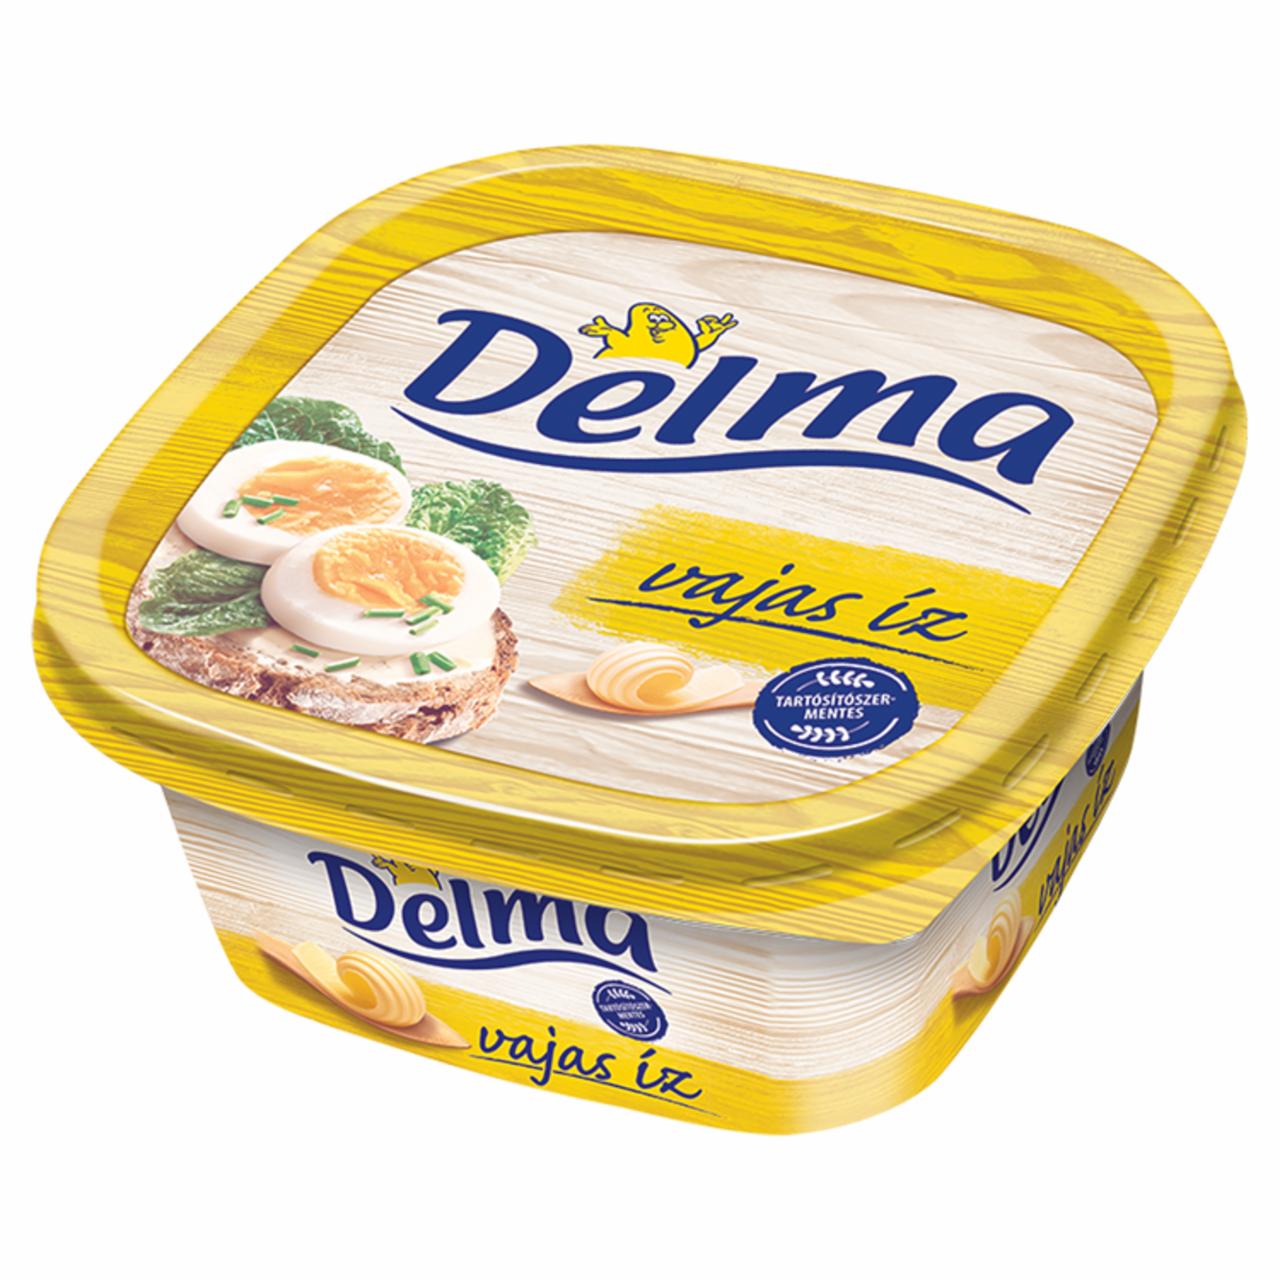 Képek - Delma Vajízű light csészés margarin 500 g